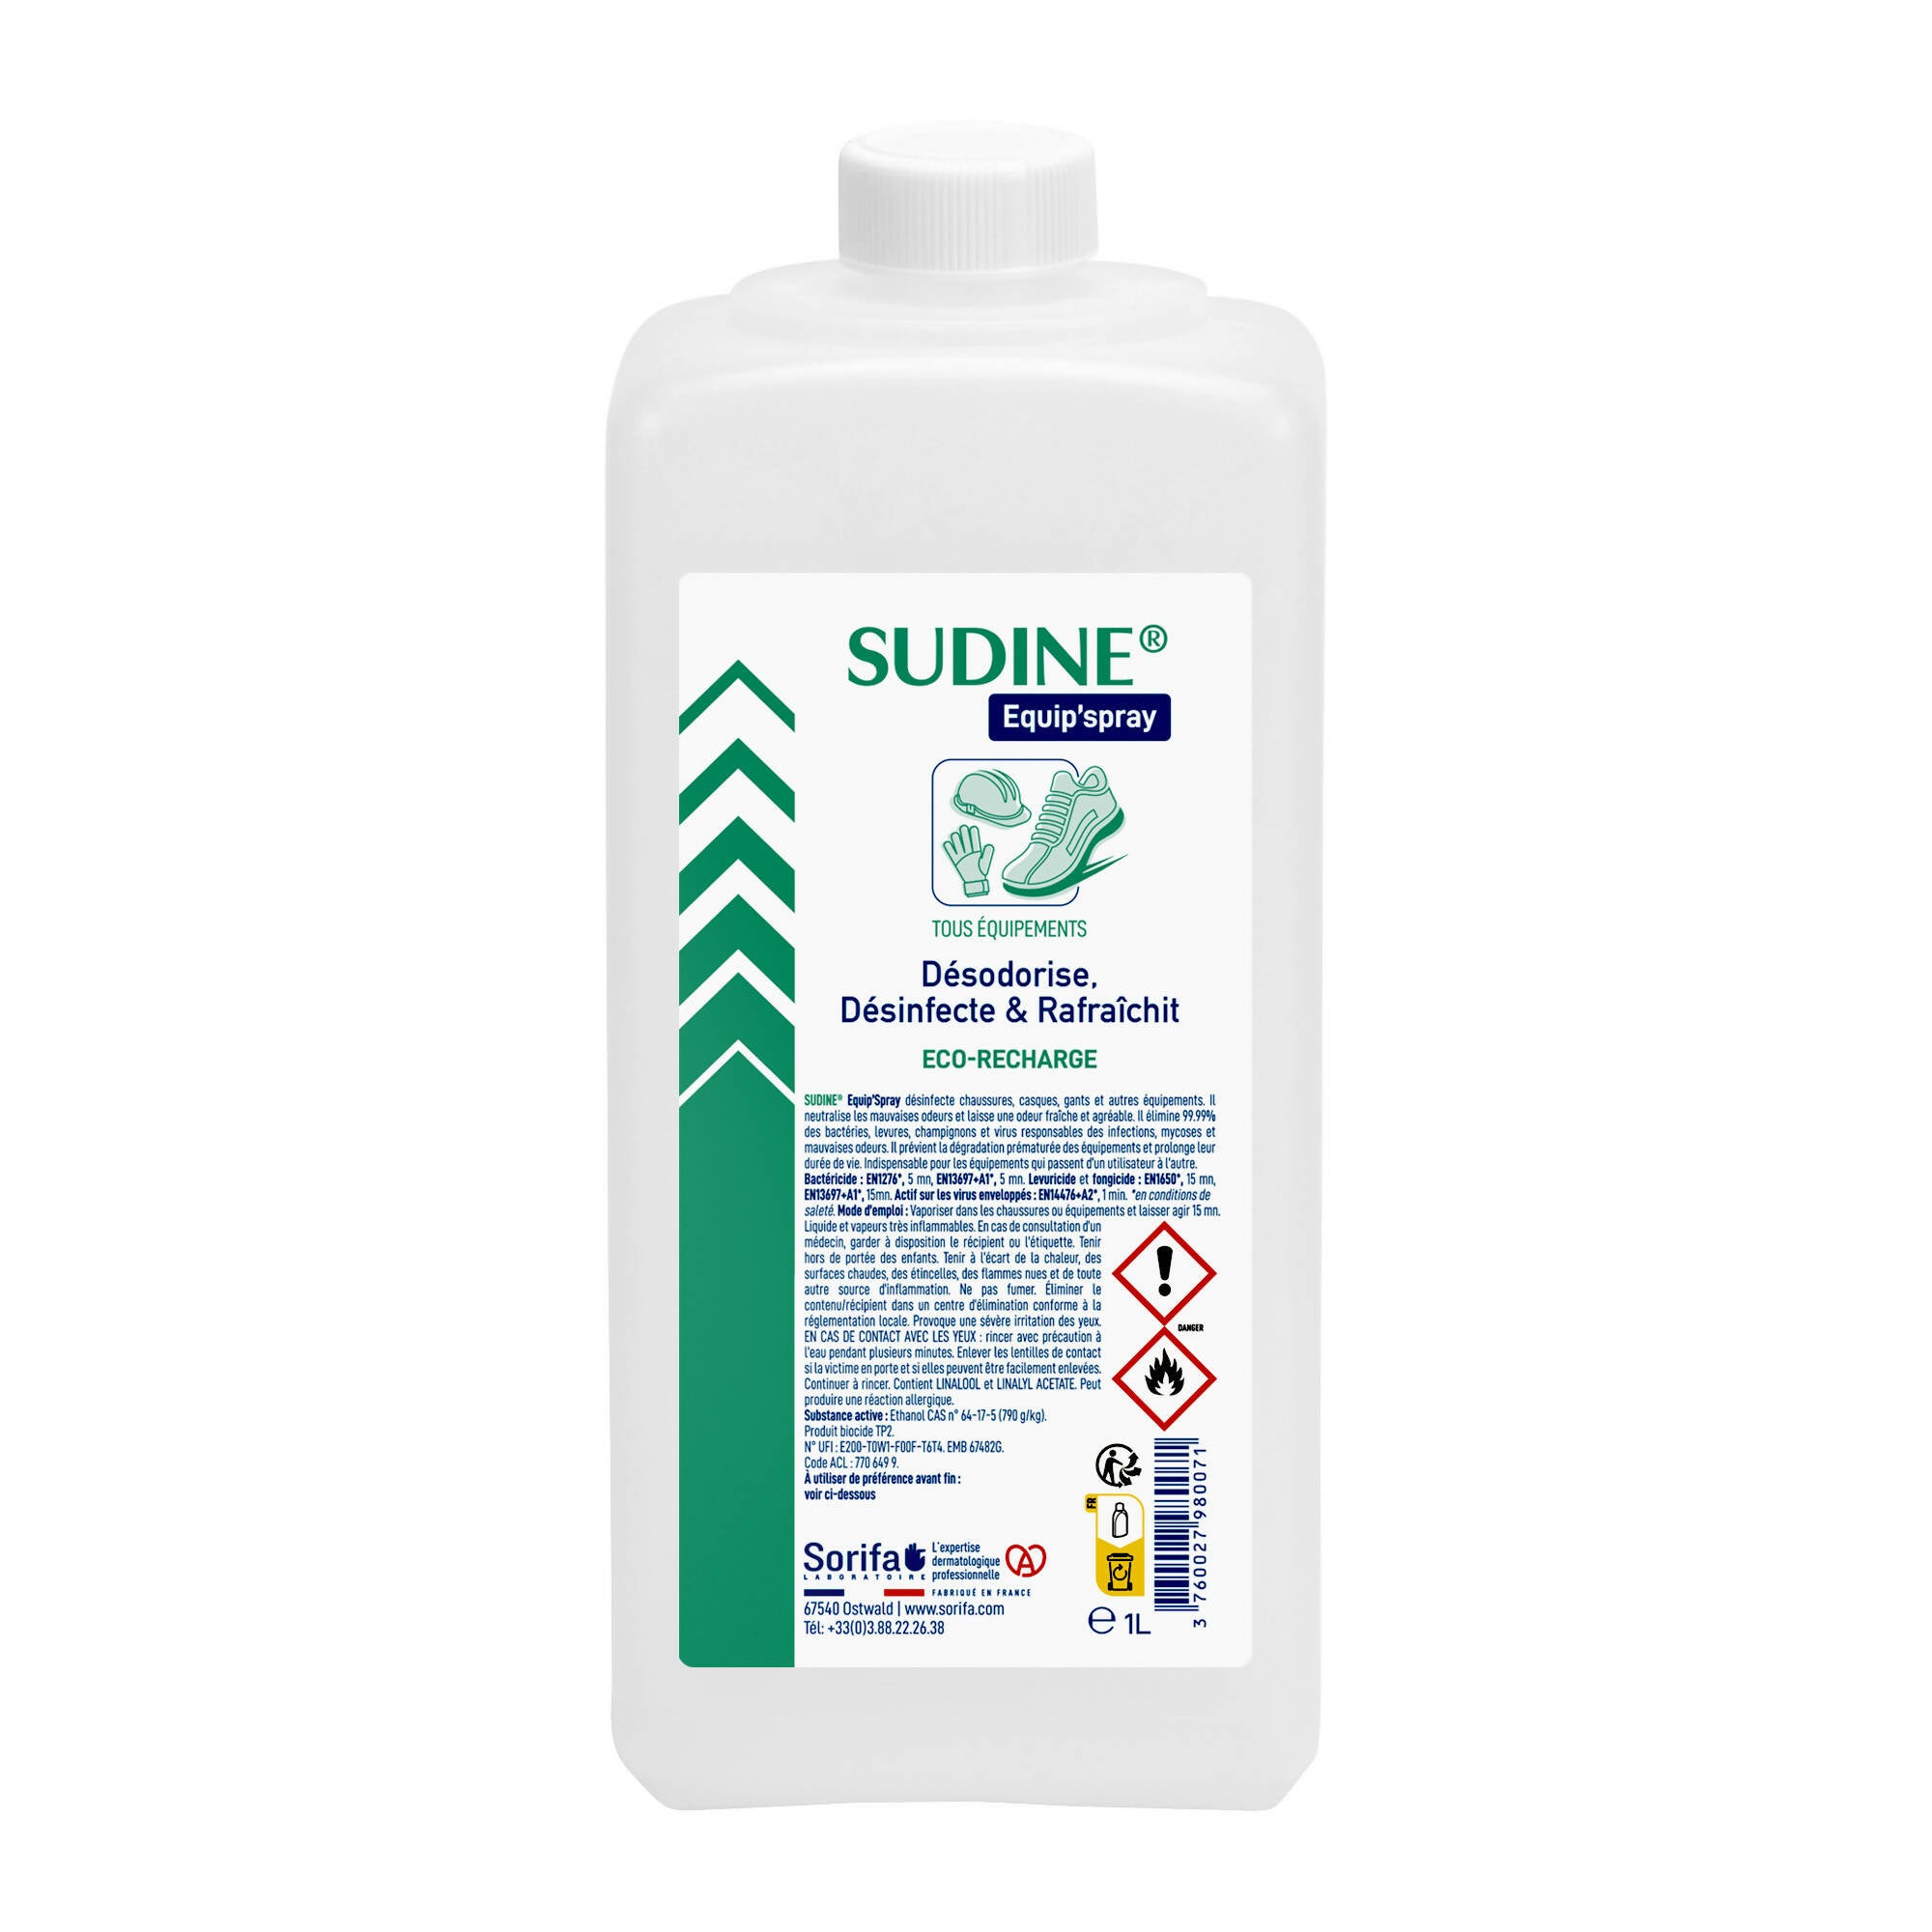 SORIFA - Sudine Equip'spray - Desodoriert, desinfiziert, erfrischt - Schuhe, Helme, Handschuhe, Ausrüstung - 1L Nachfüllung für SUDINE Equip'spray 50 und 125 ml oder für das 1L SORIFA Spray